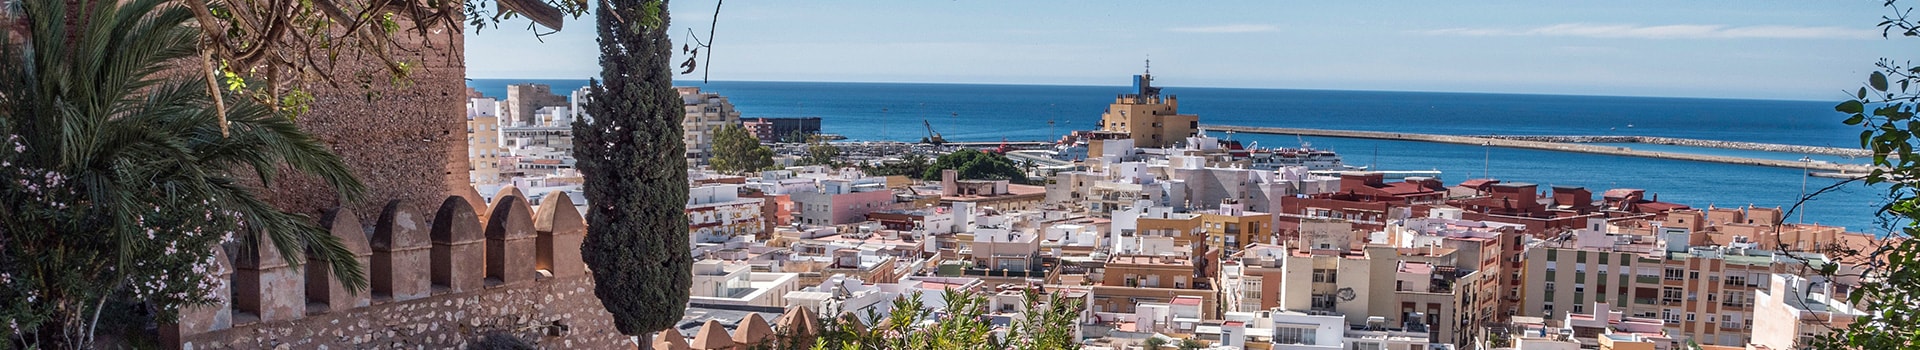 Vigo - Almería